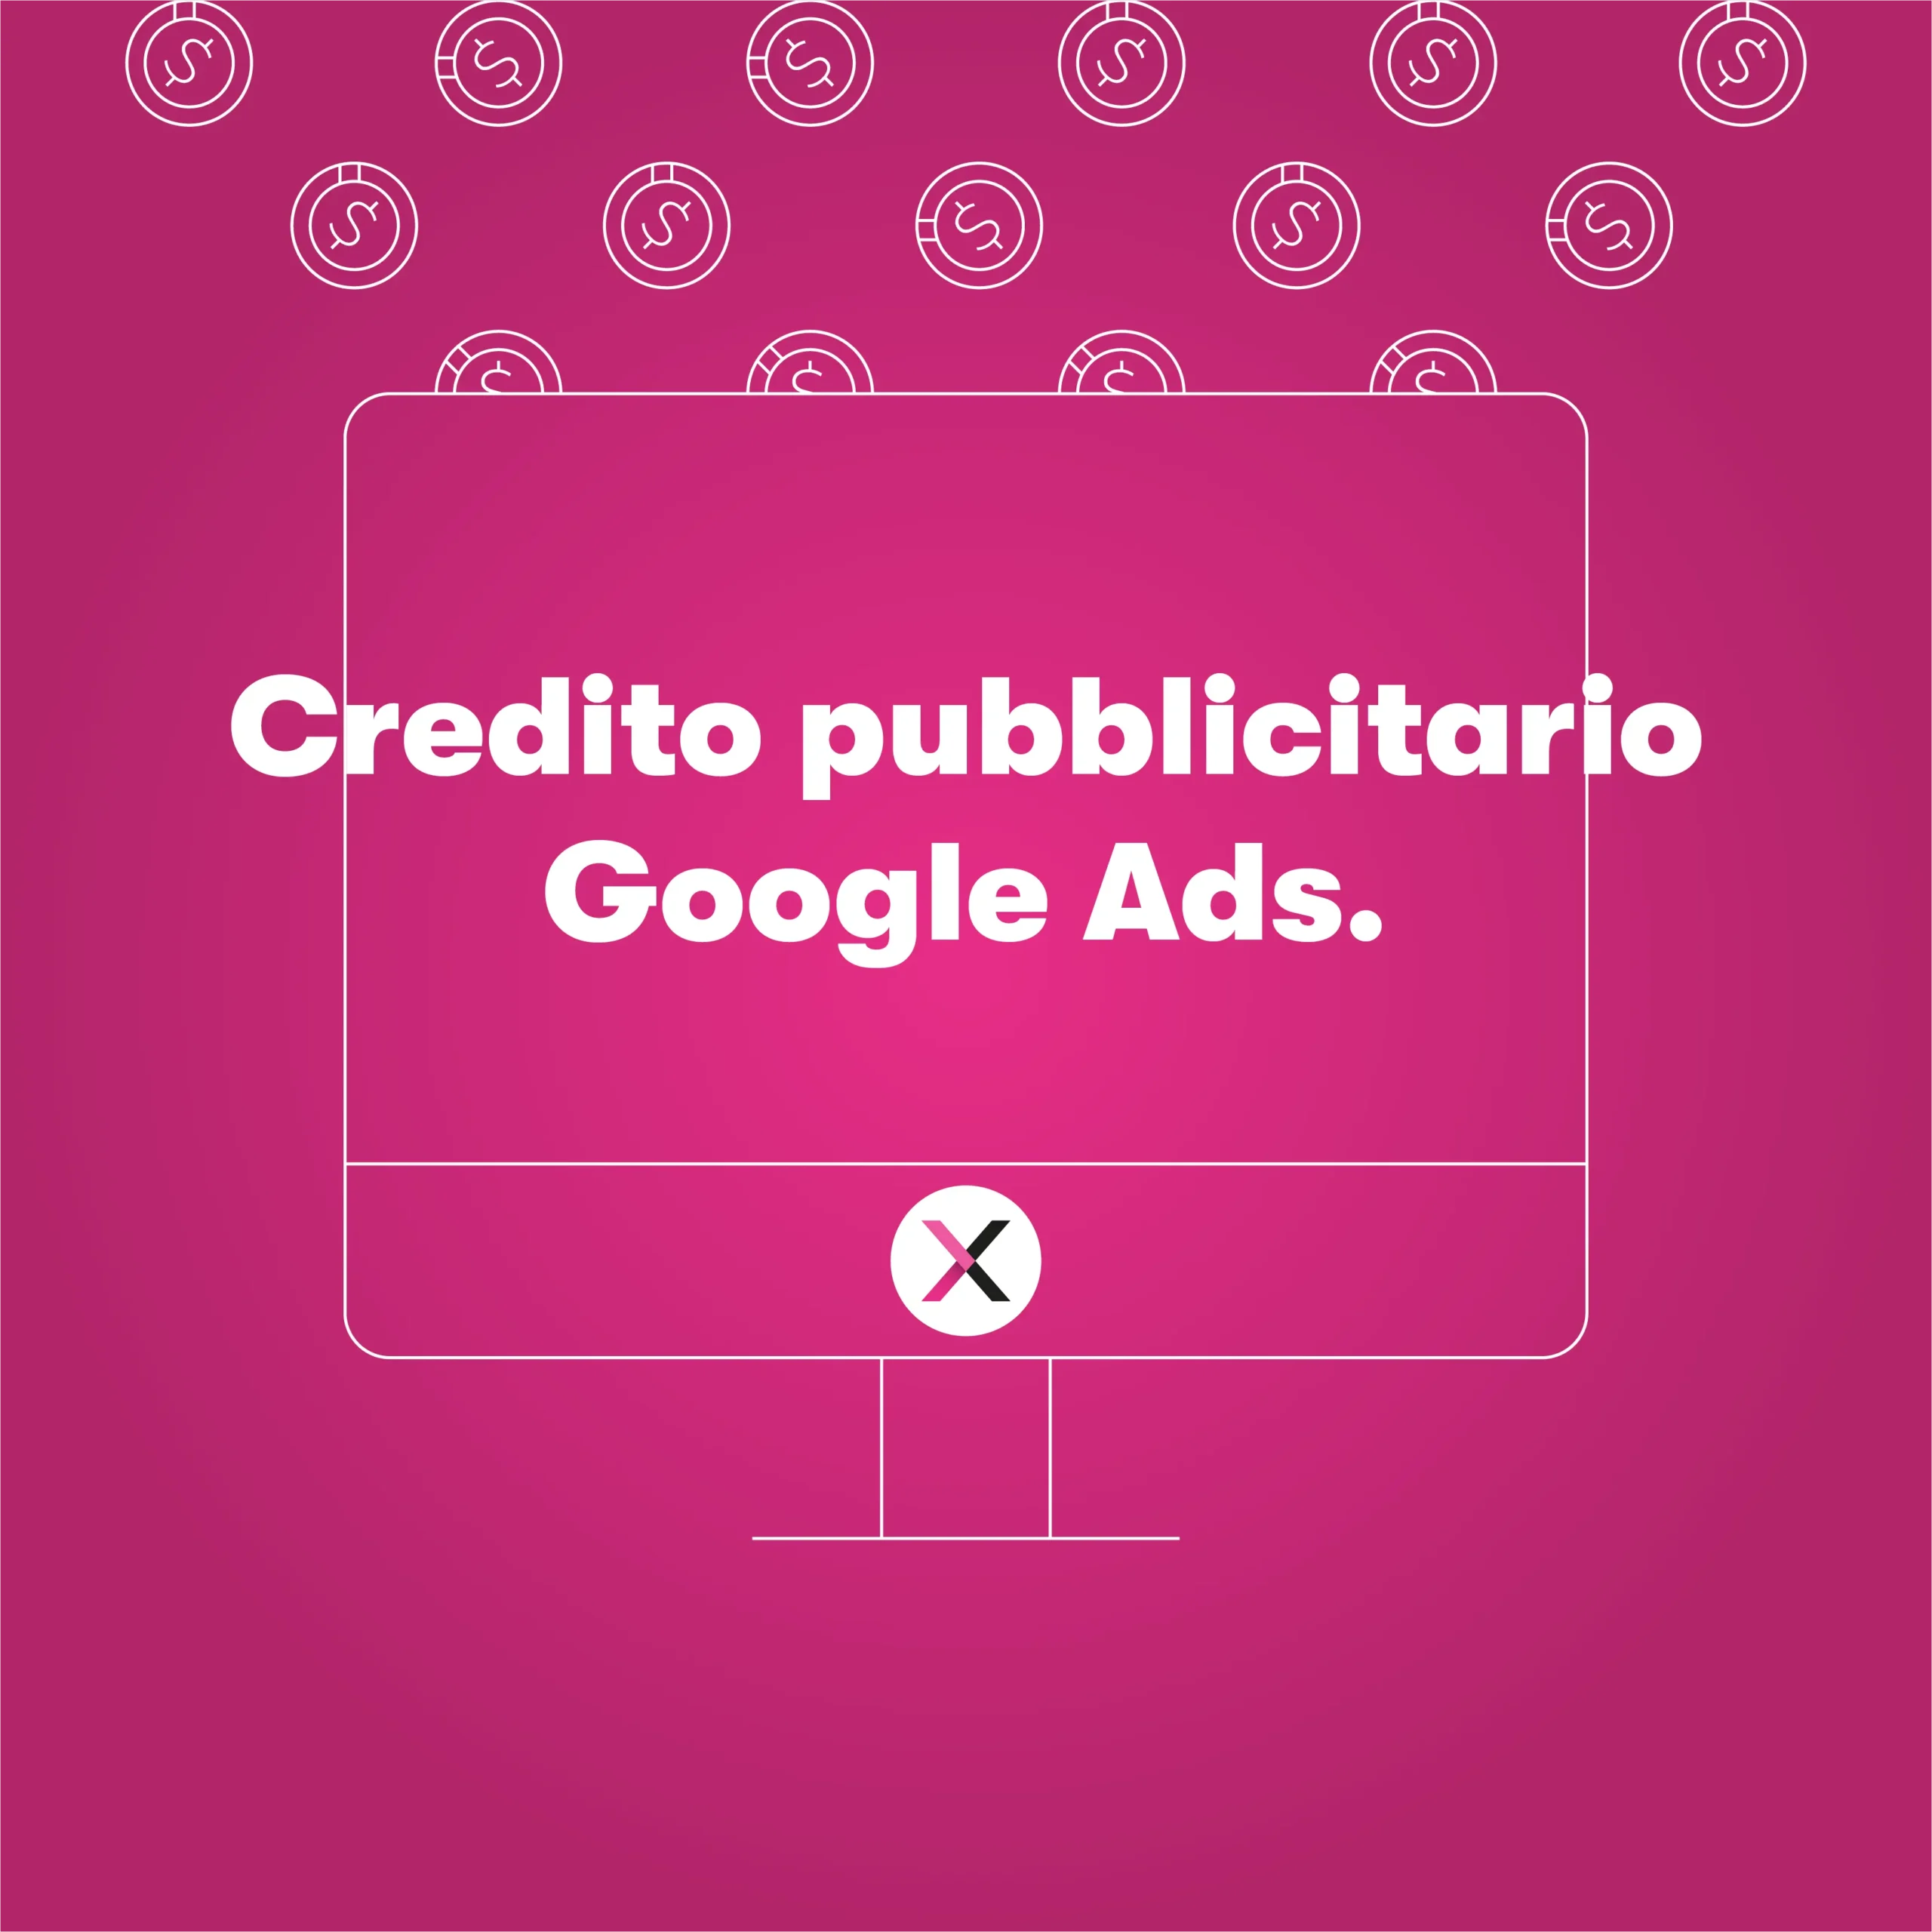 Crediti pubblicitari Google Ads: sostegno Covid-19 alle PMI.